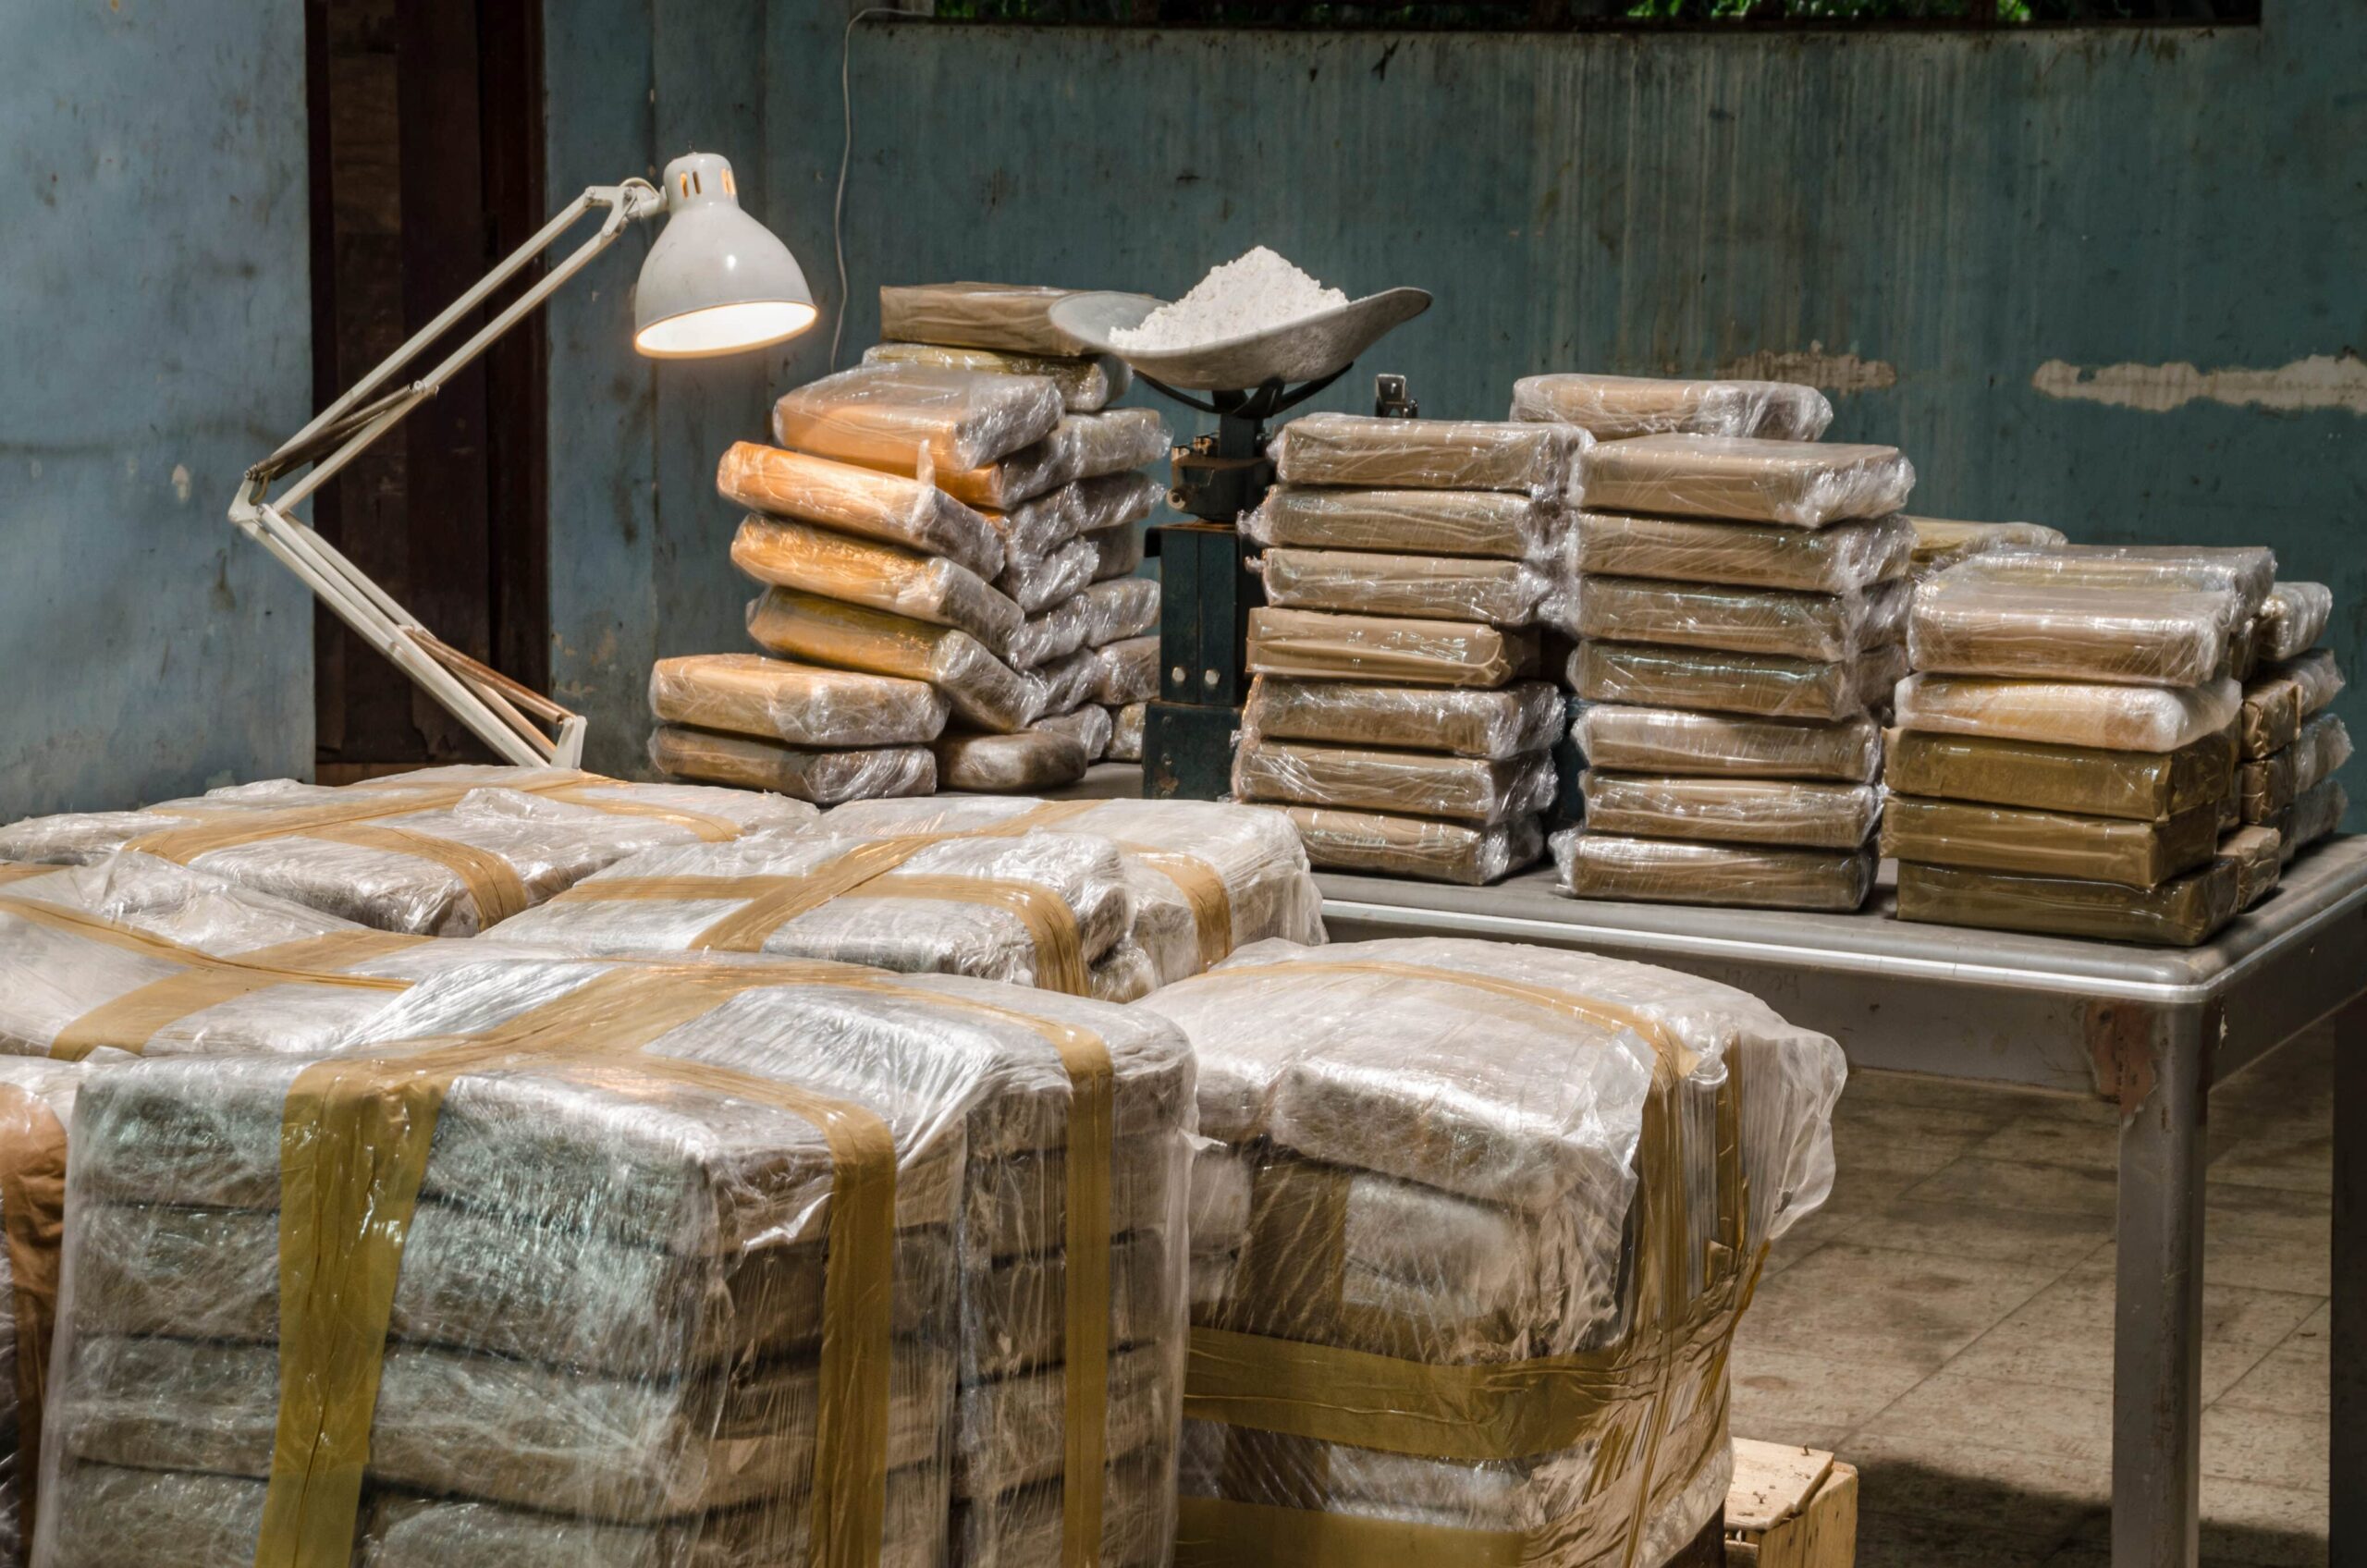 コカイン生産量が記録的な水準に急増、国連報告書